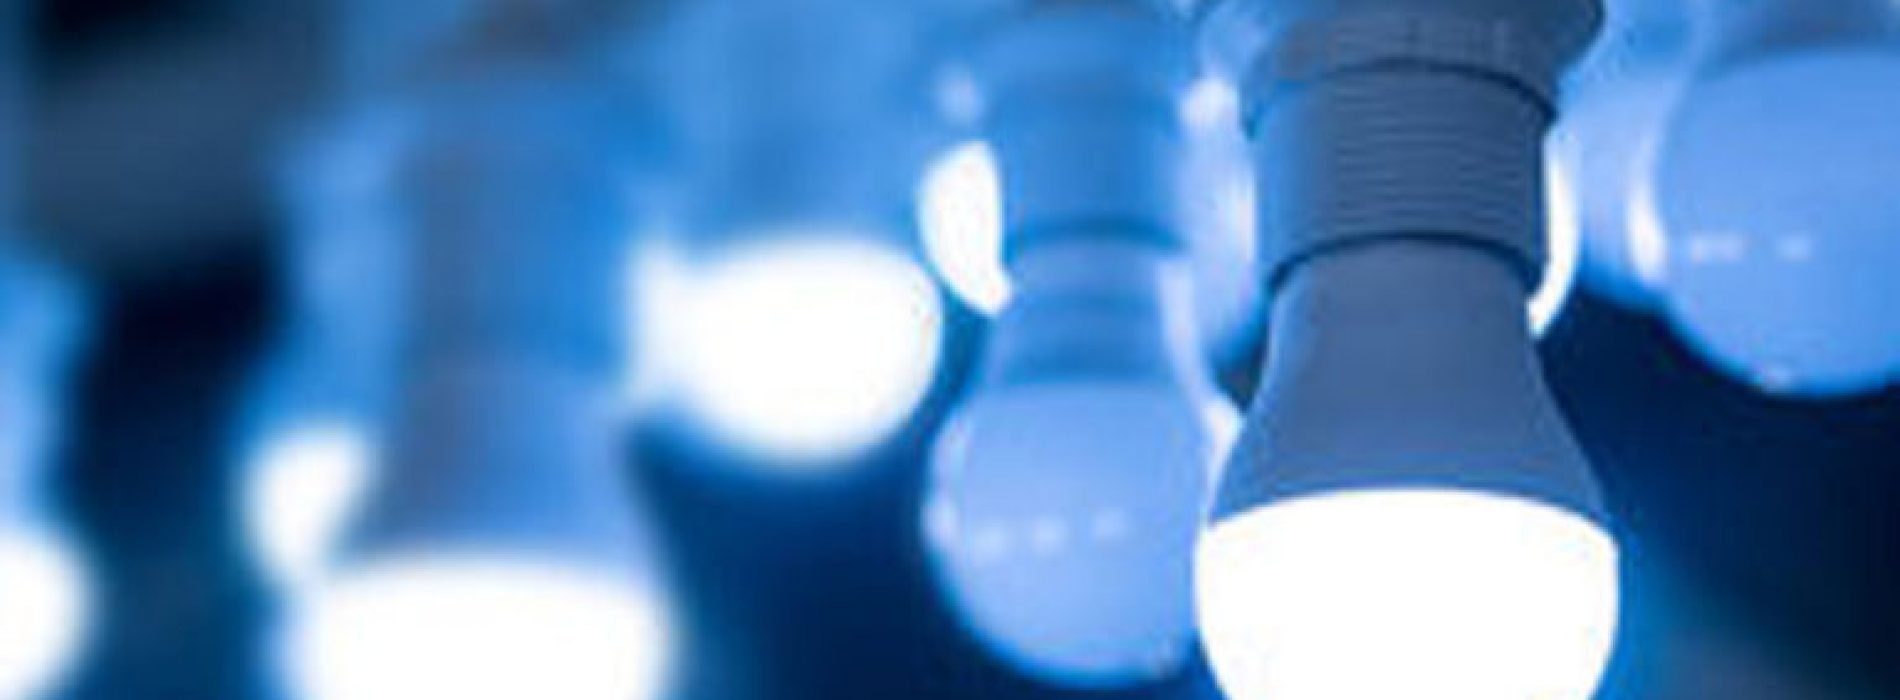 LED-verlichting in uw huis kan uw ogen permanent beschadigen – onderzoek